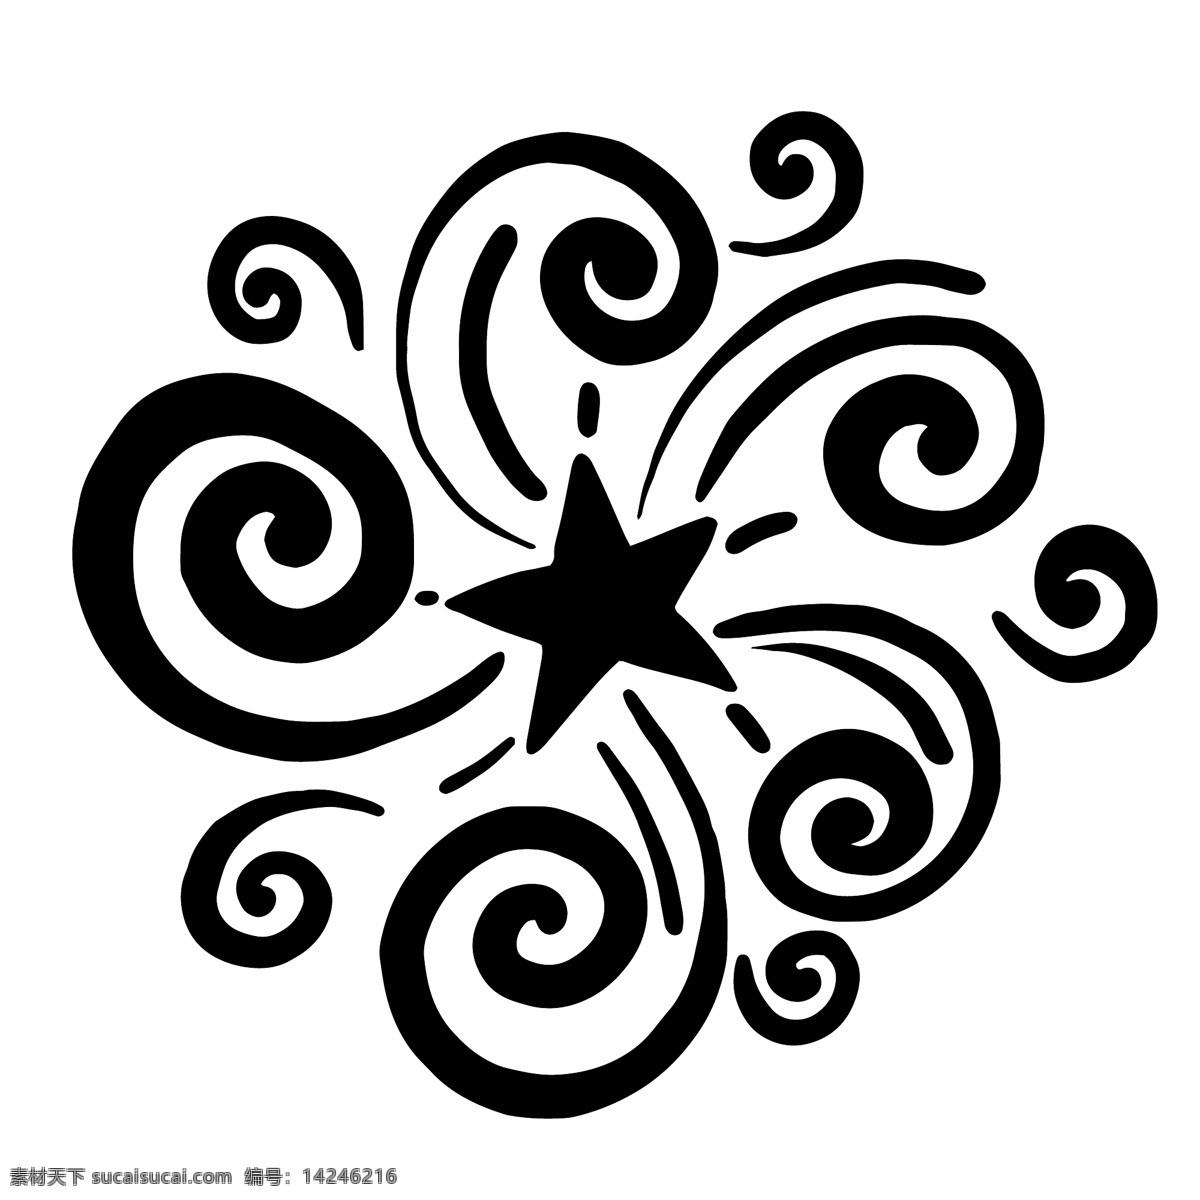 黑色 创意 五角星 图案 线条 立体 图案设计 几何 装饰图案 涂鸦 嘻哈图案